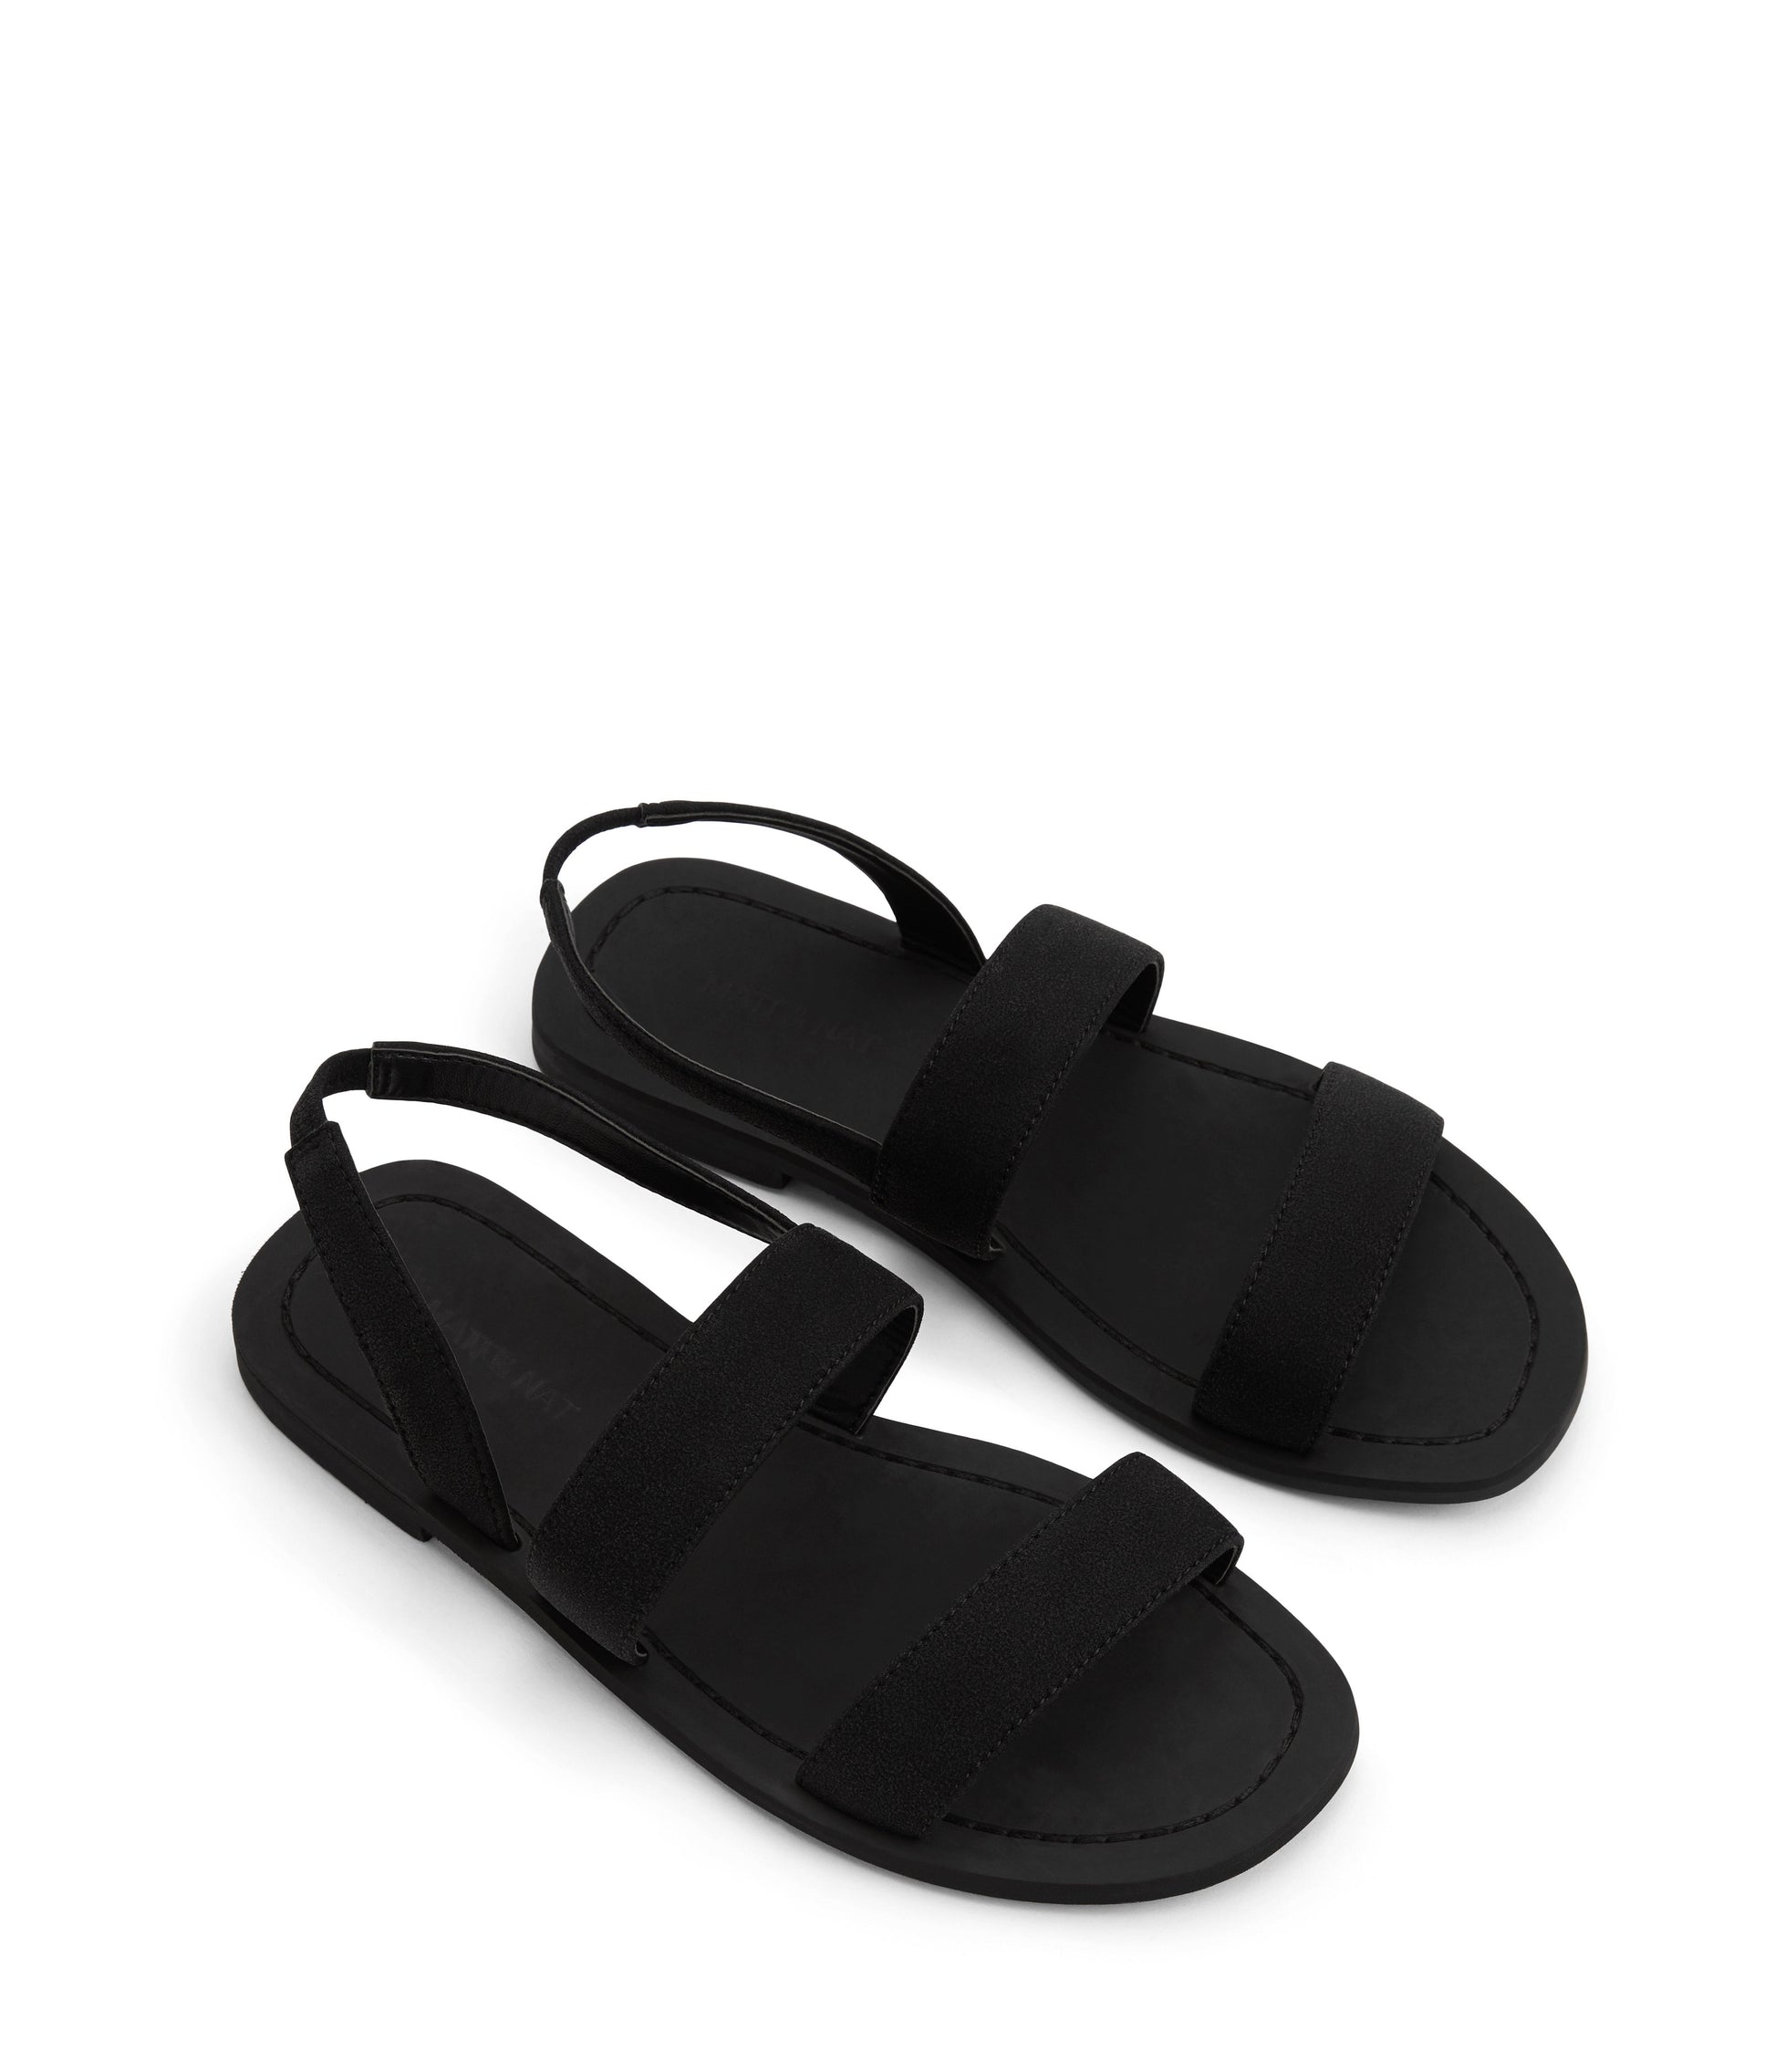 TILIE Women's Vegan Flat Sandals | Color: Black - variant::black